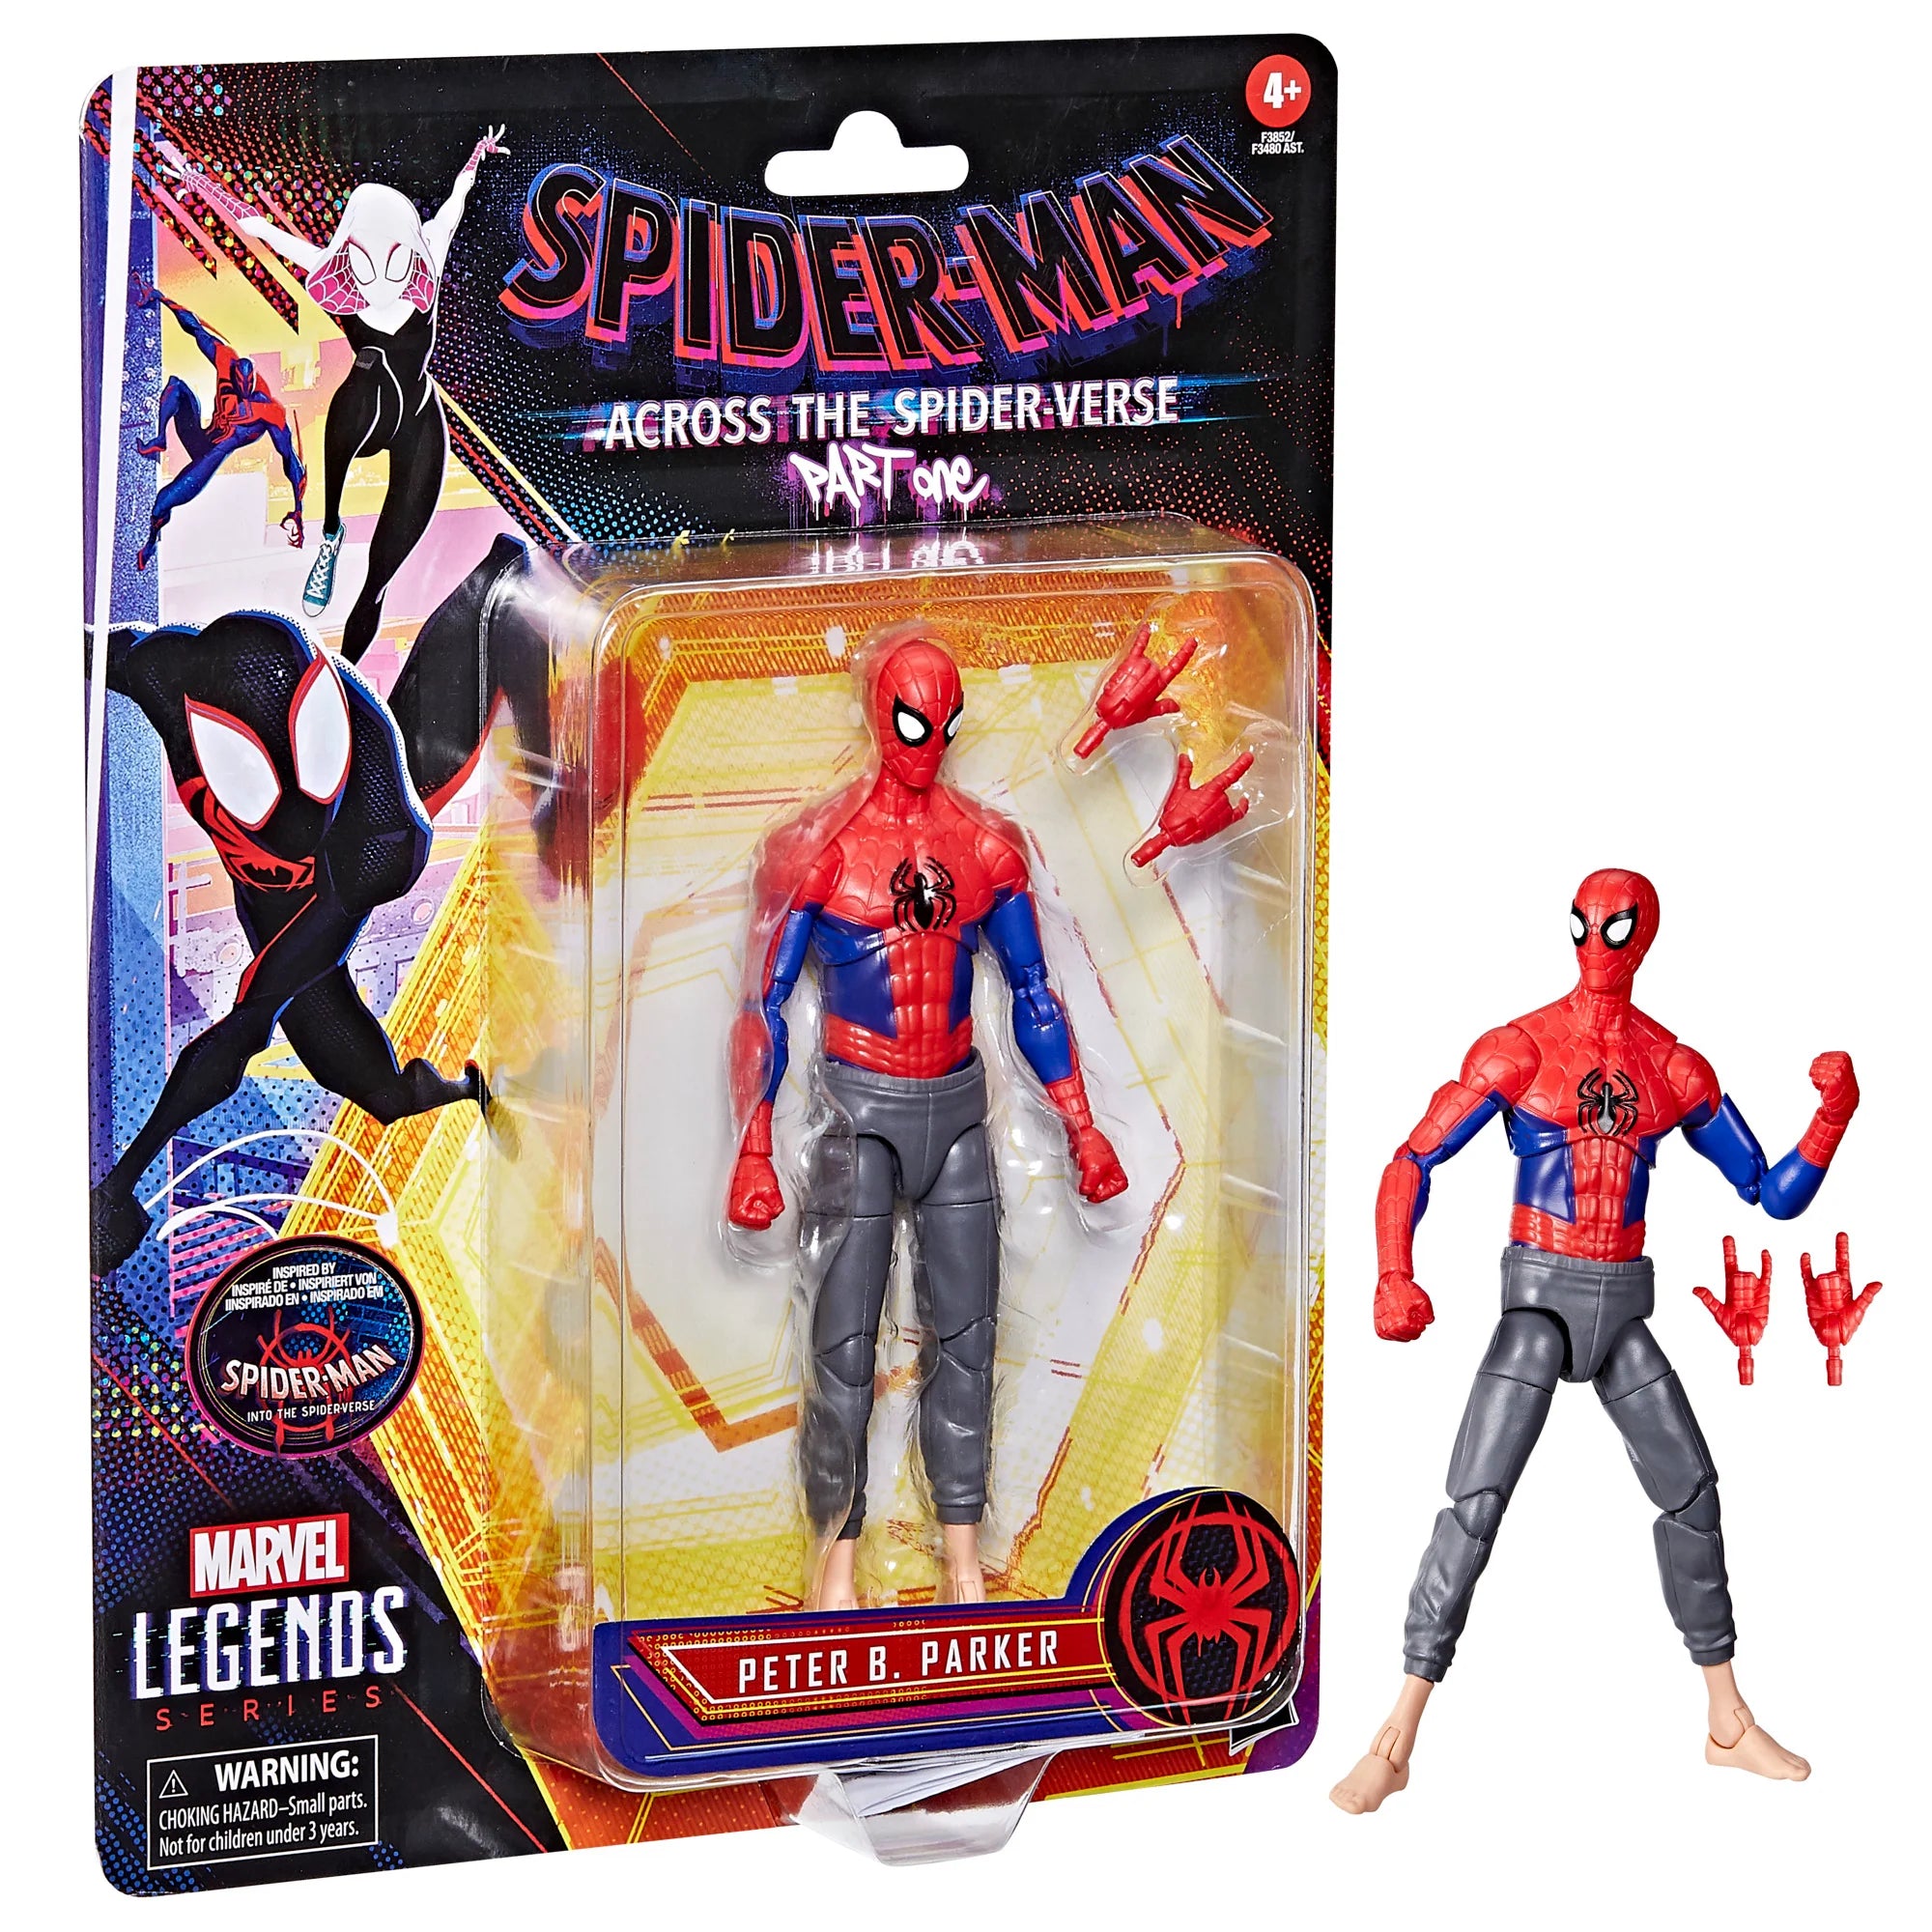 Spider-man retro Marvel Legends Miles Morales Spiderverse MJ Peter